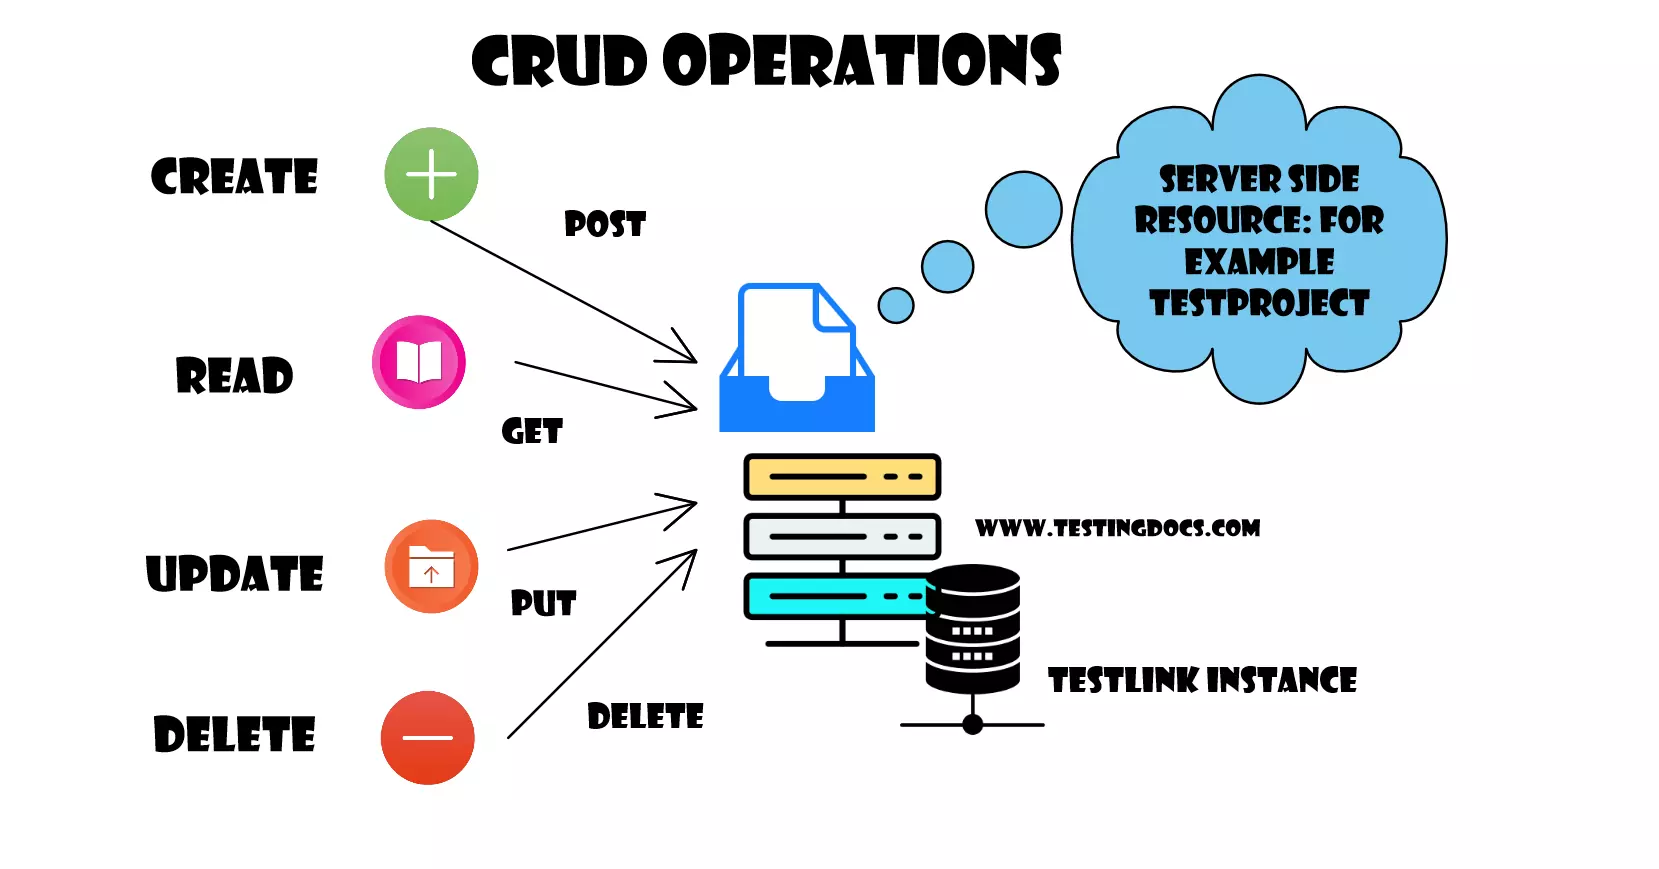 CRUD Operations